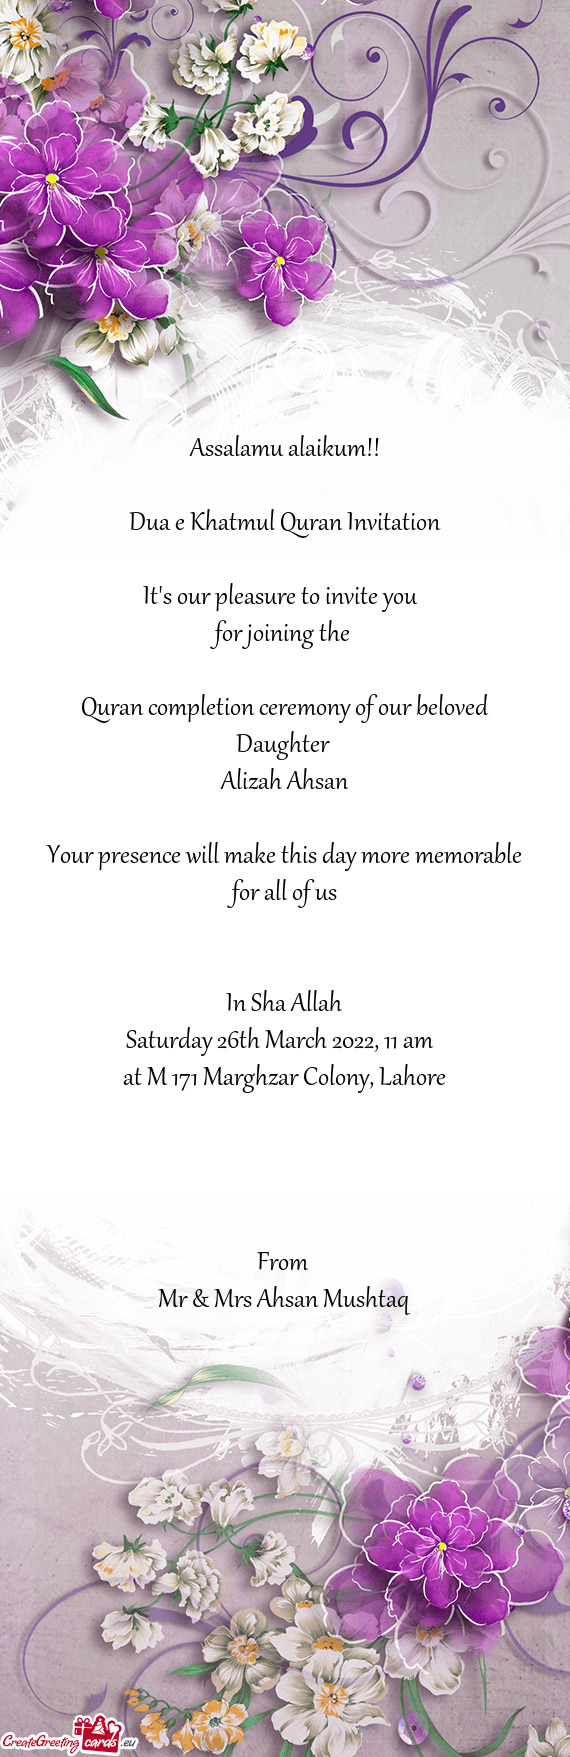 Dua e Khatmul Quran Invitation